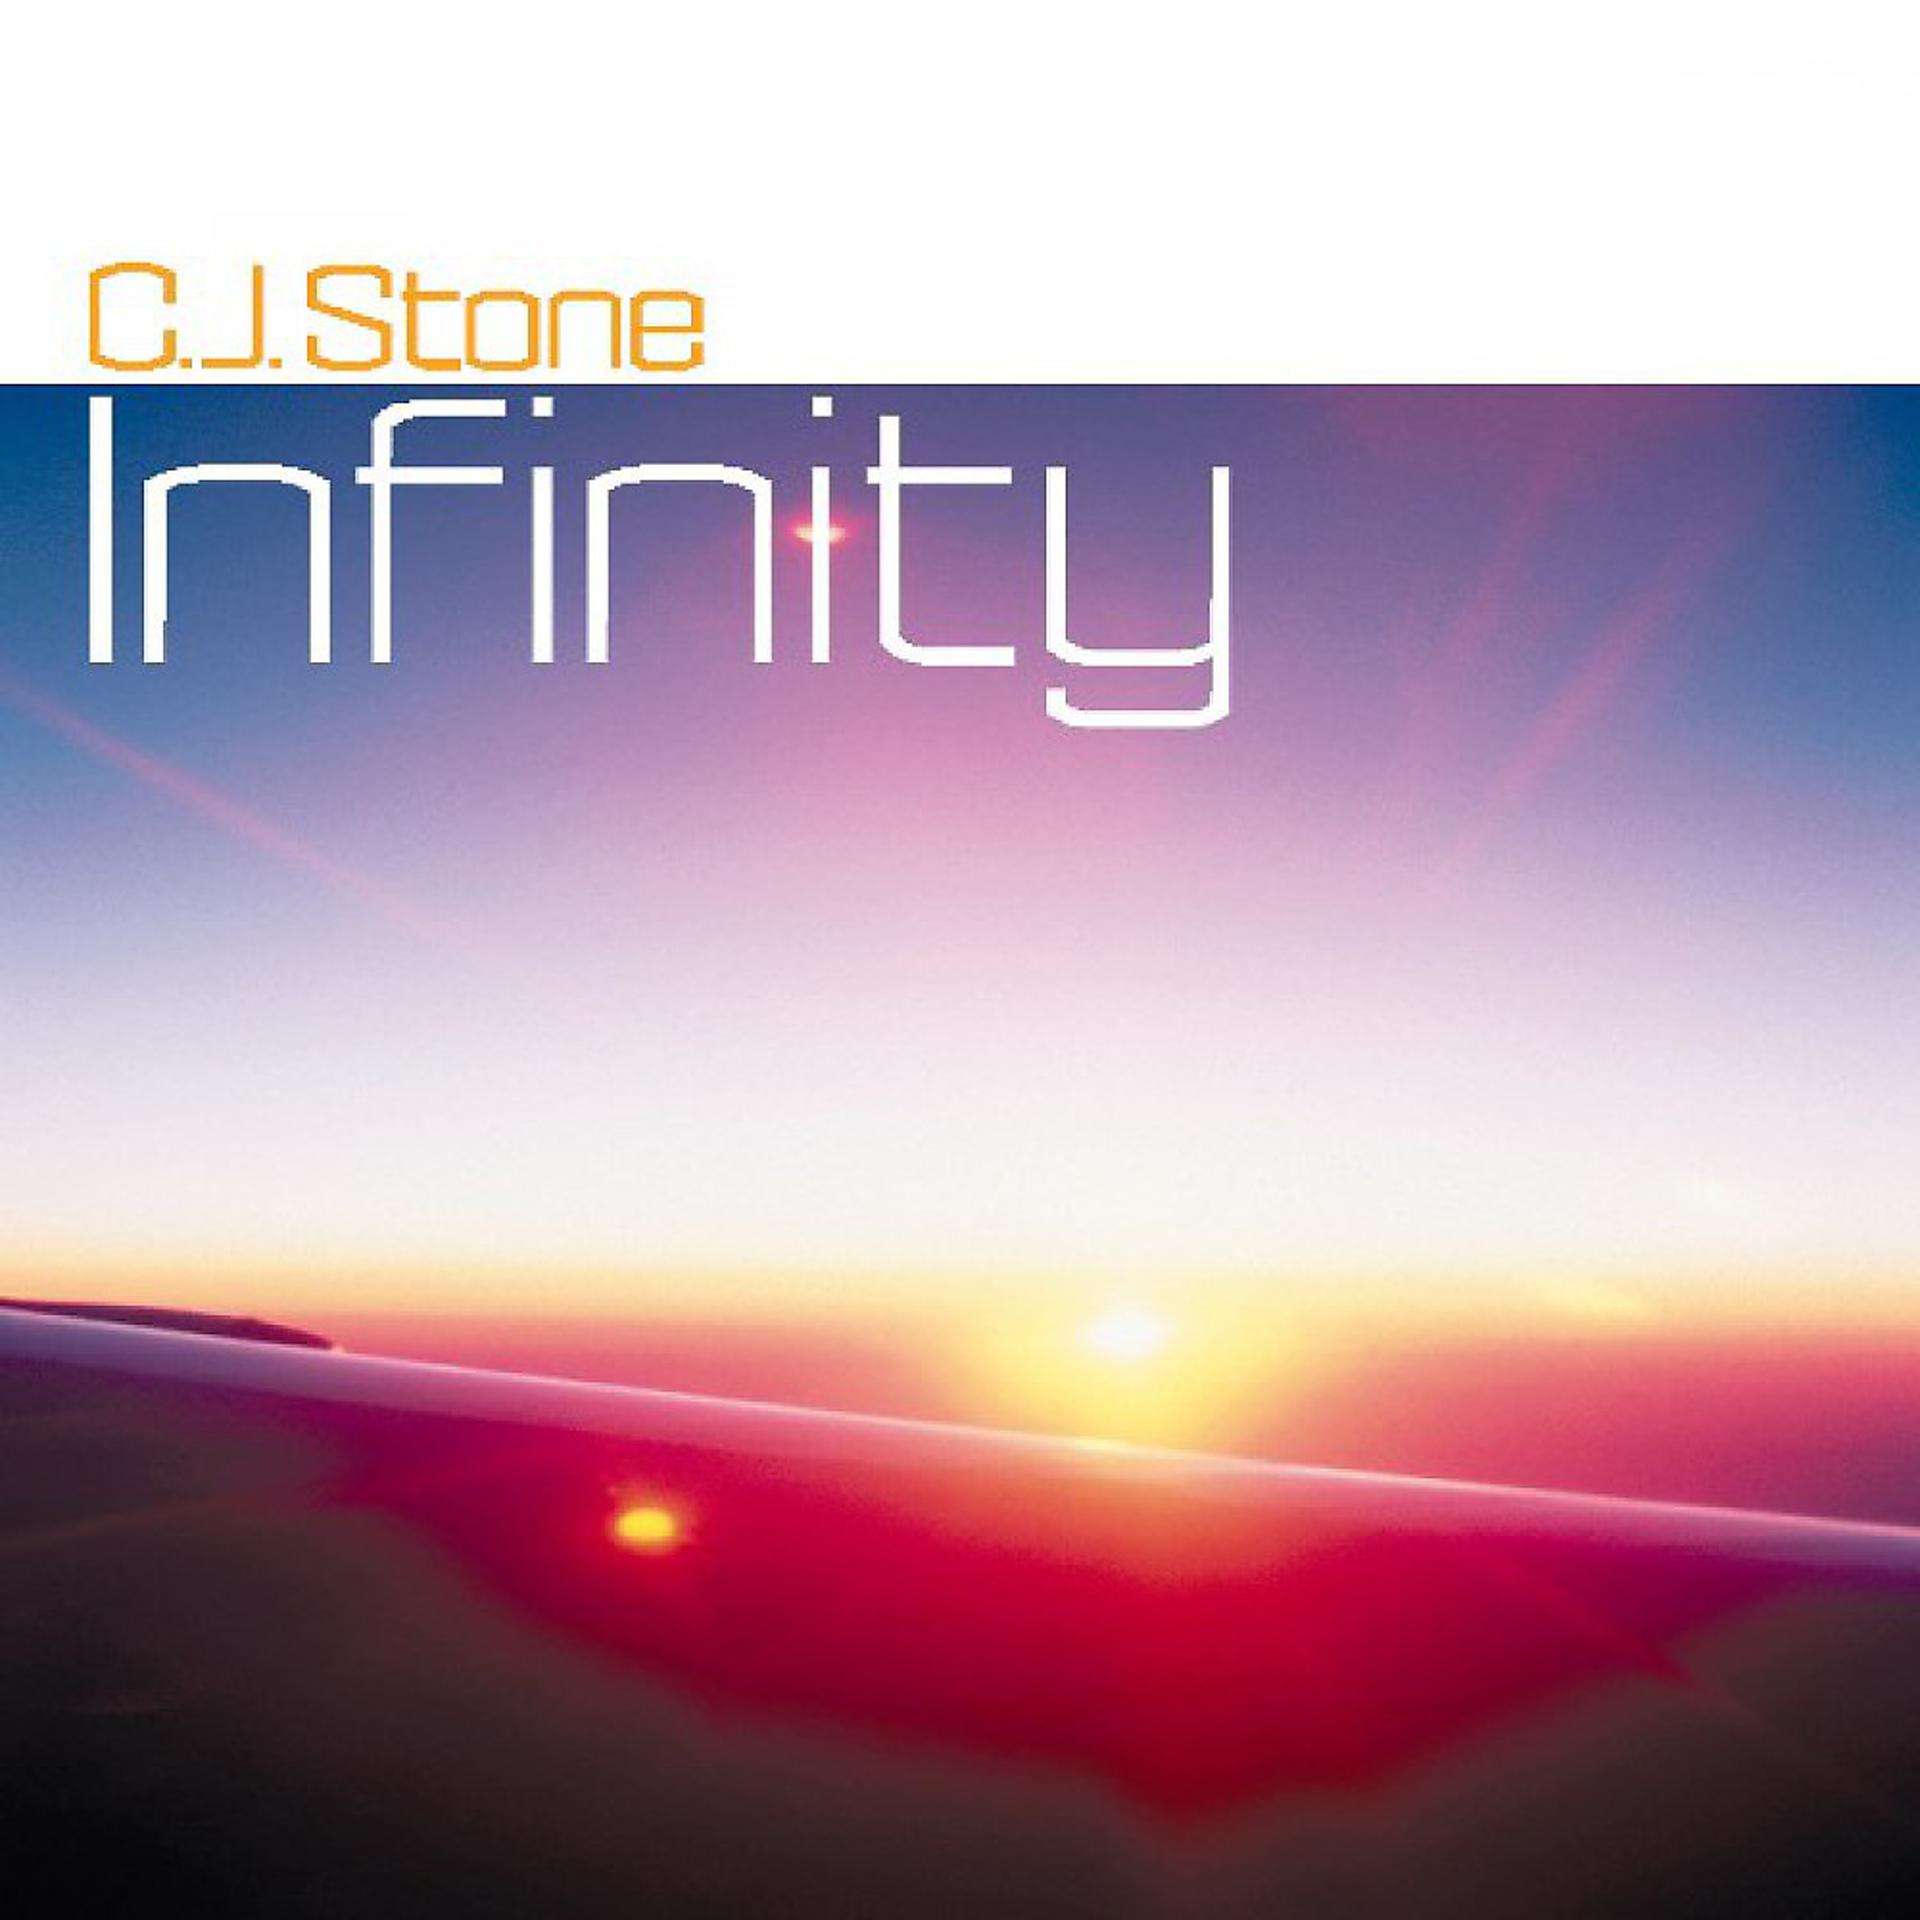 C.I. Stone - Infinity. DJ CJ Stone. Инфинити Дж Стоун. CJ Stone - Infinity [kontor118].